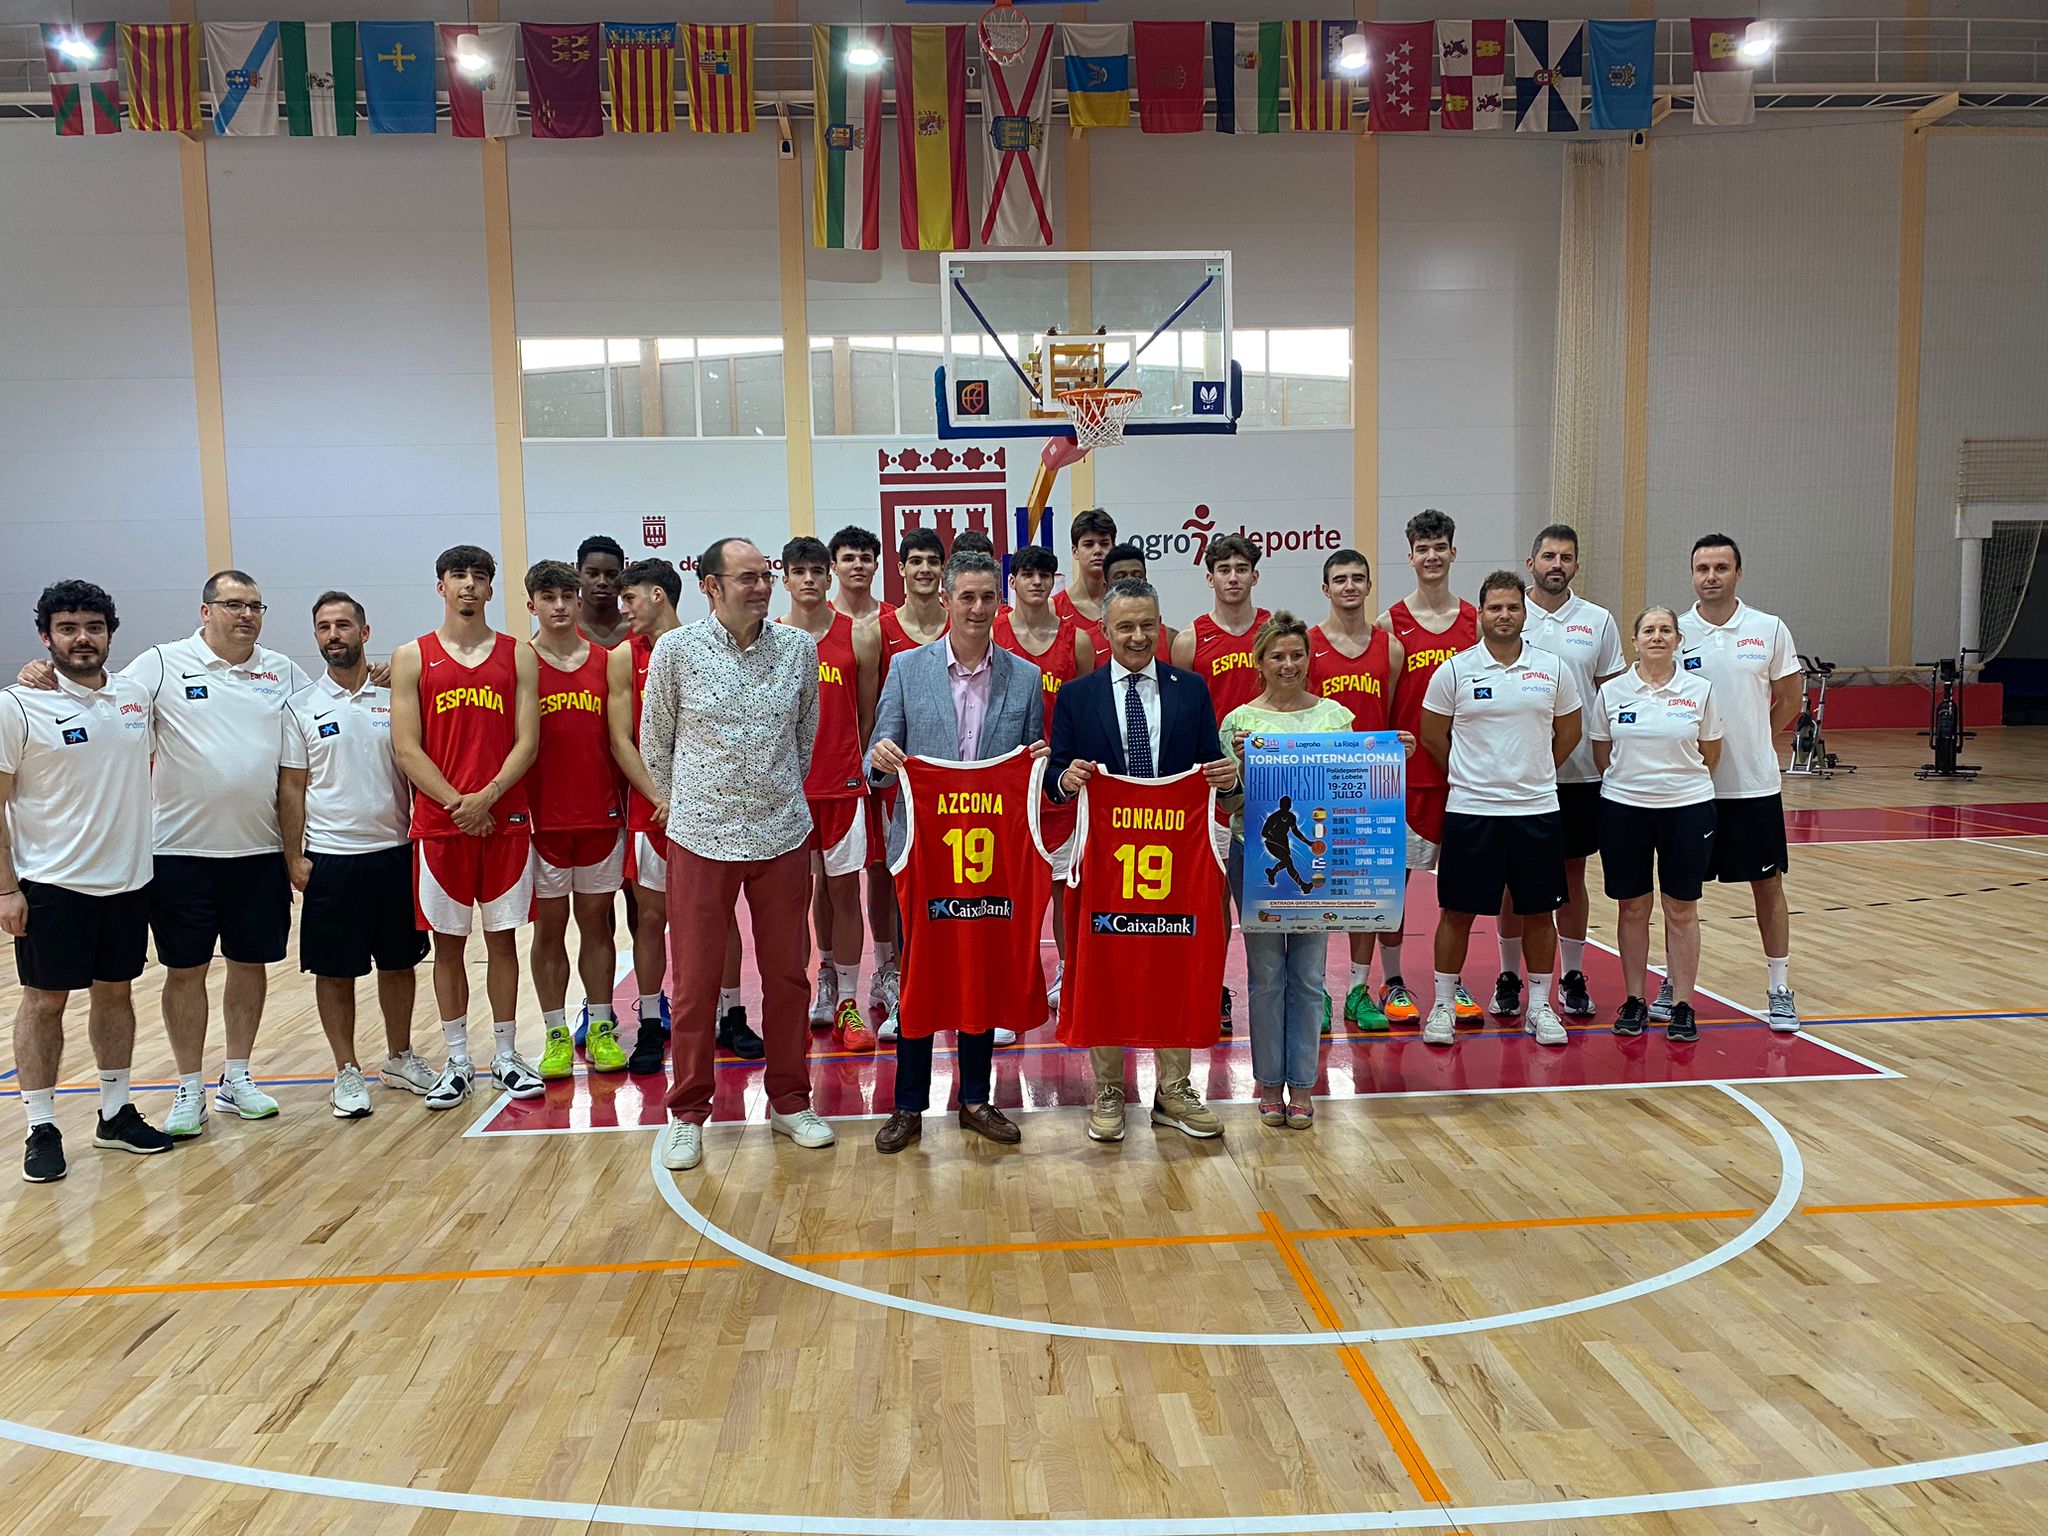 Imagen Logroño acoge del 19 al 21 de julio un torneo preparatorio del Eurobasket que disputarán las selecciones U18 de España, Italia, Grecia y Lituania